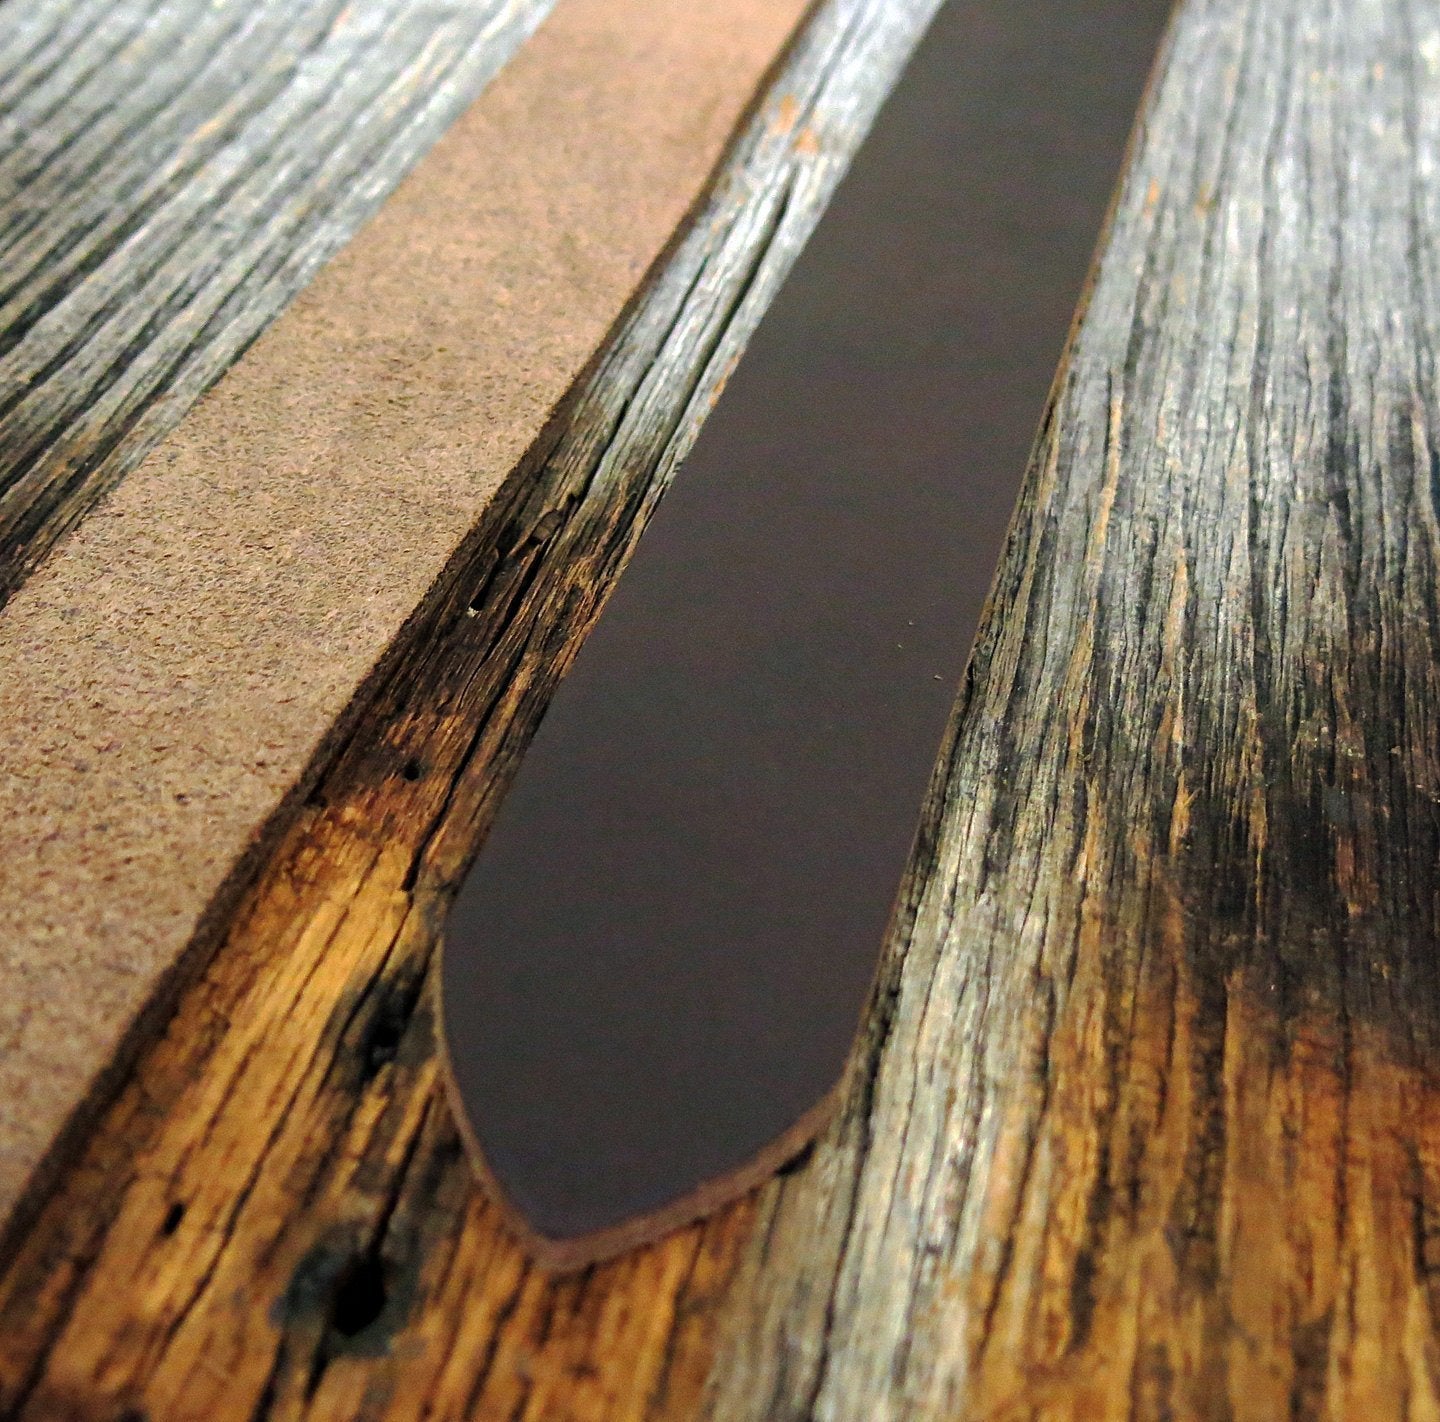 Horween Chromexcel Leather | Dark Brown Belt for Leather Belt